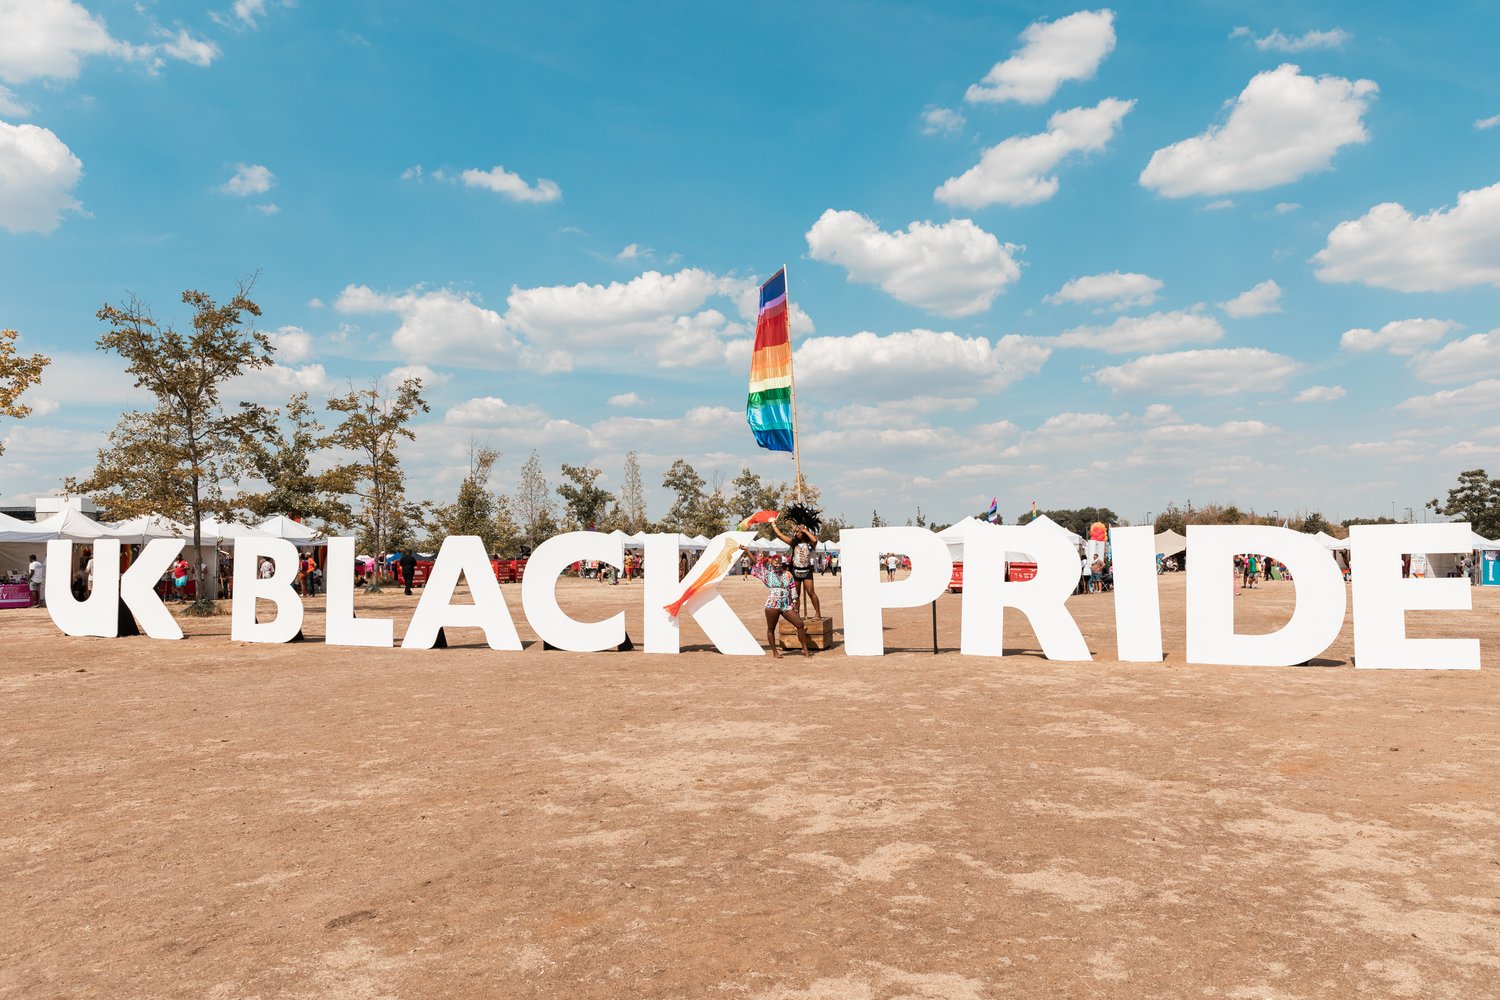 UK Black Pride to return on Sunday, August 11